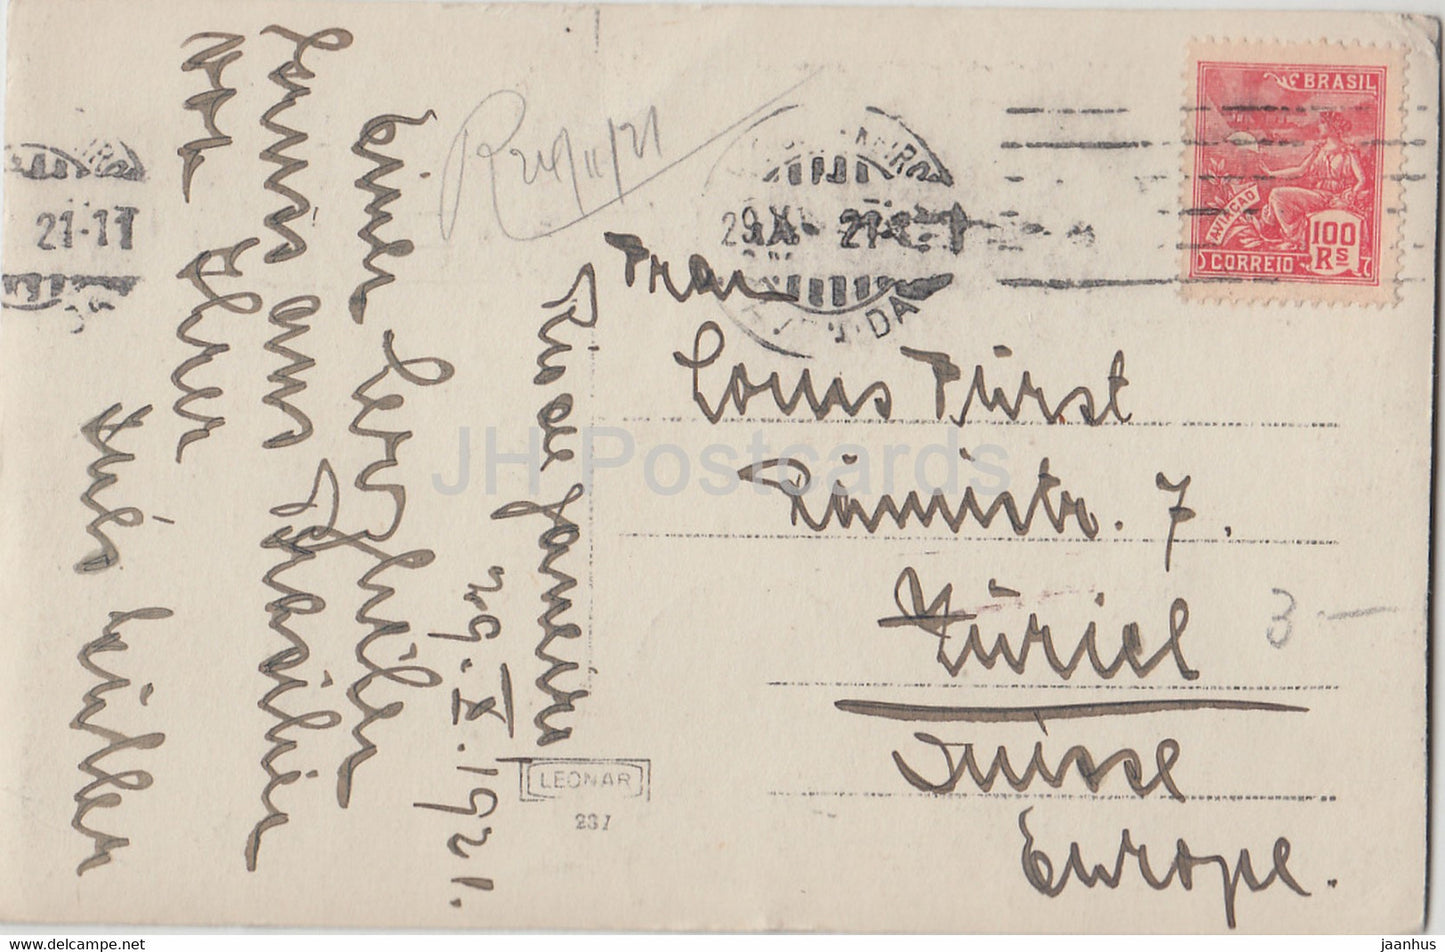 Rio de Janeiro - Le Fort de Santa Cruz - 237 - alte Postkarte - 1921 - Brasilien - gebraucht